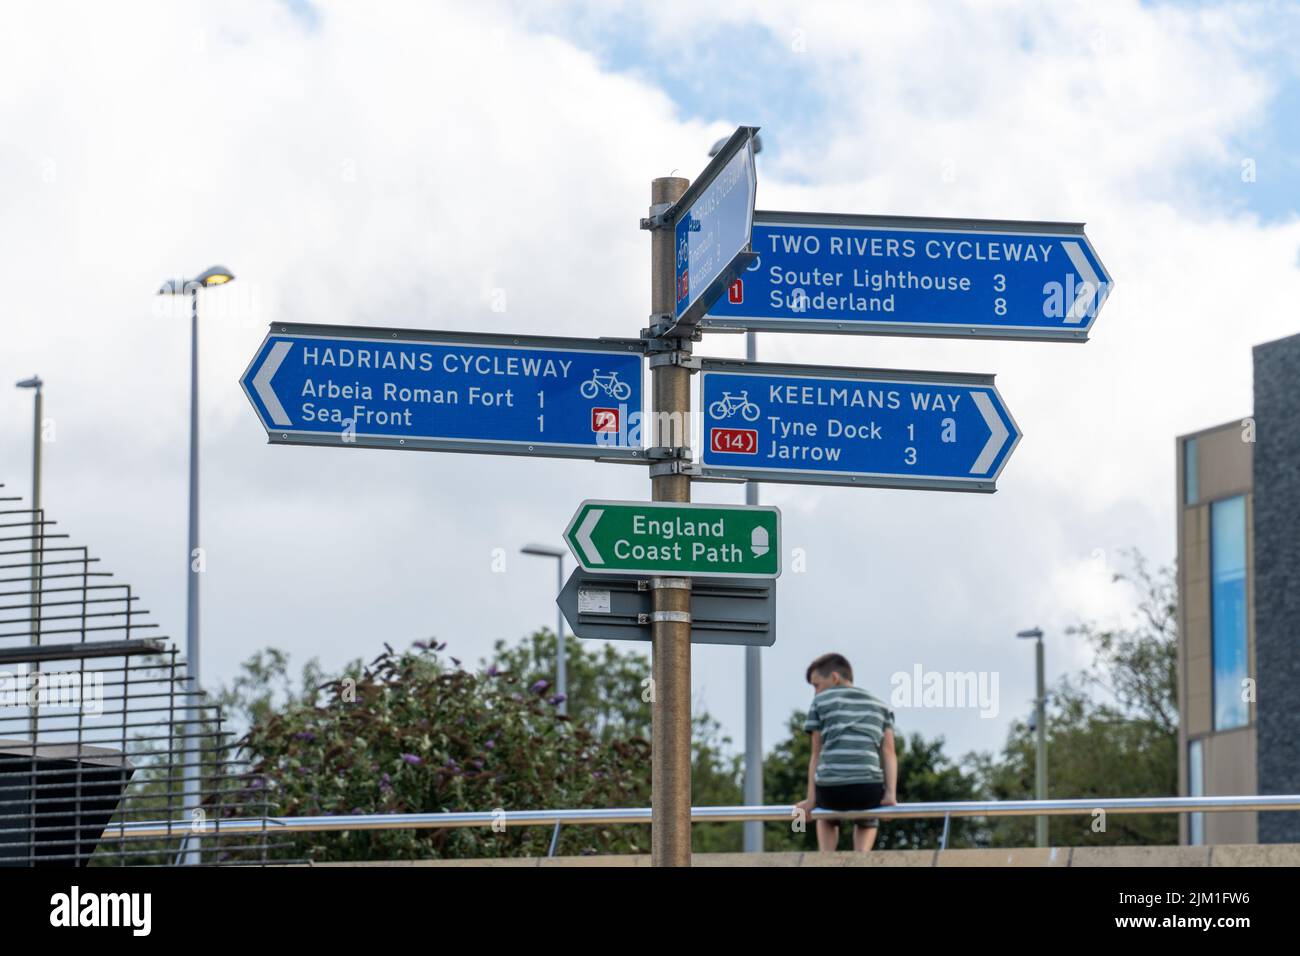 Panneau indiquant les directions aux cyclistes sur la voie cyclable NCN 72 d'Hadrien et d'autres routes, à South Shields, South Tyneside, Royaume-Uni. Banque D'Images